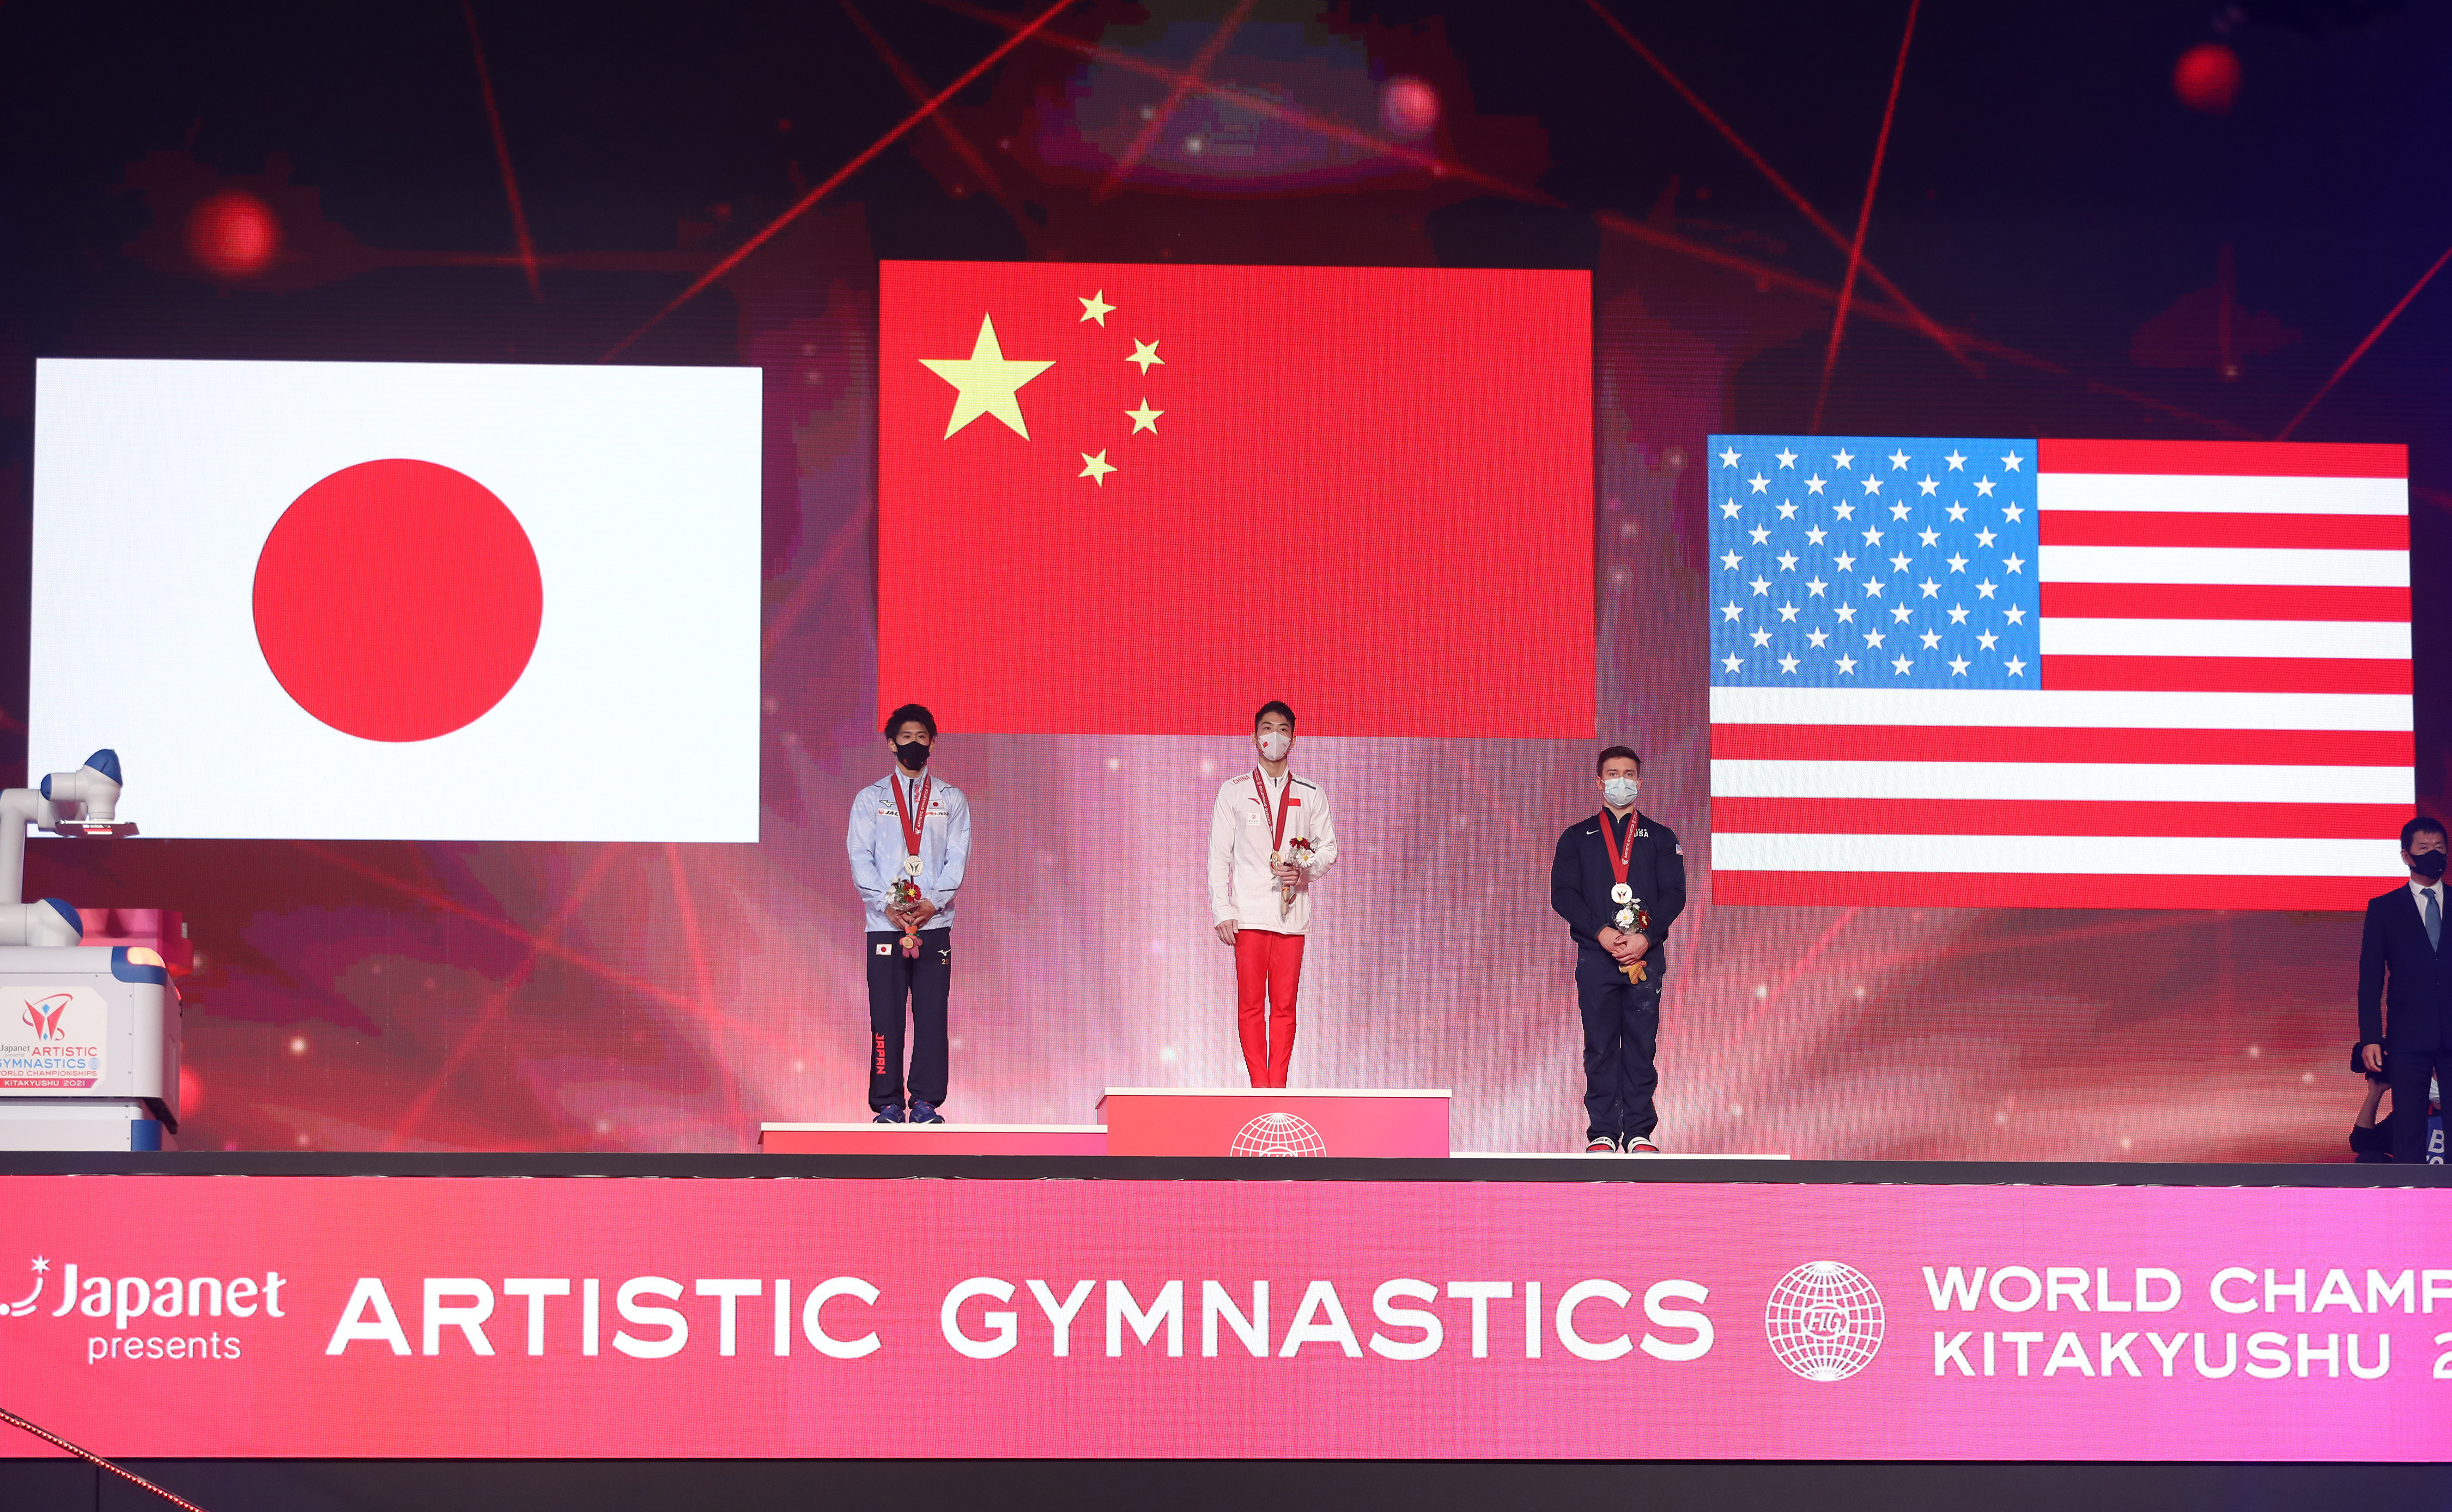 冠军我国选手胡旭威（中）、亚军日本选手桥本大辉（左）和第三名美国选手布罗迪·马隆在单杠决赛颁奖仪式上。新华社记者 杜潇逸 摄